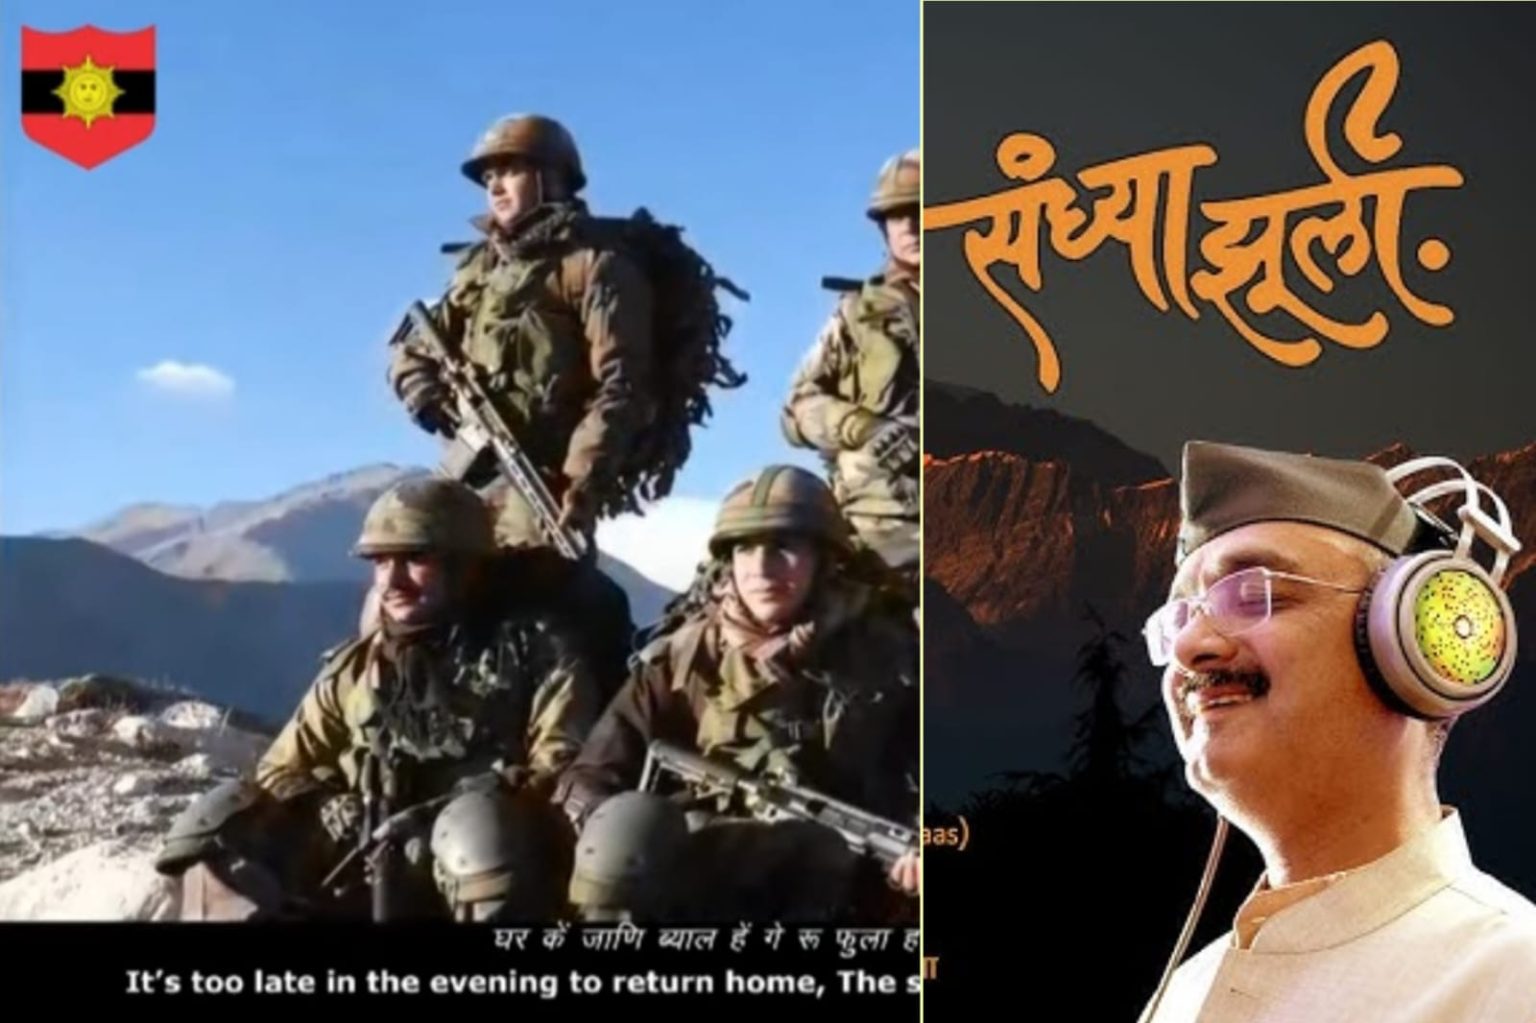 भारतीय सेना ने अपने सोशल मीडिया प्लेटफार्म पर शेयर किया वरिष्ठ पत्रकार और लोकगायक अजय ढोंडियाल का गाया गया गीत ‘के संध्या झूली’